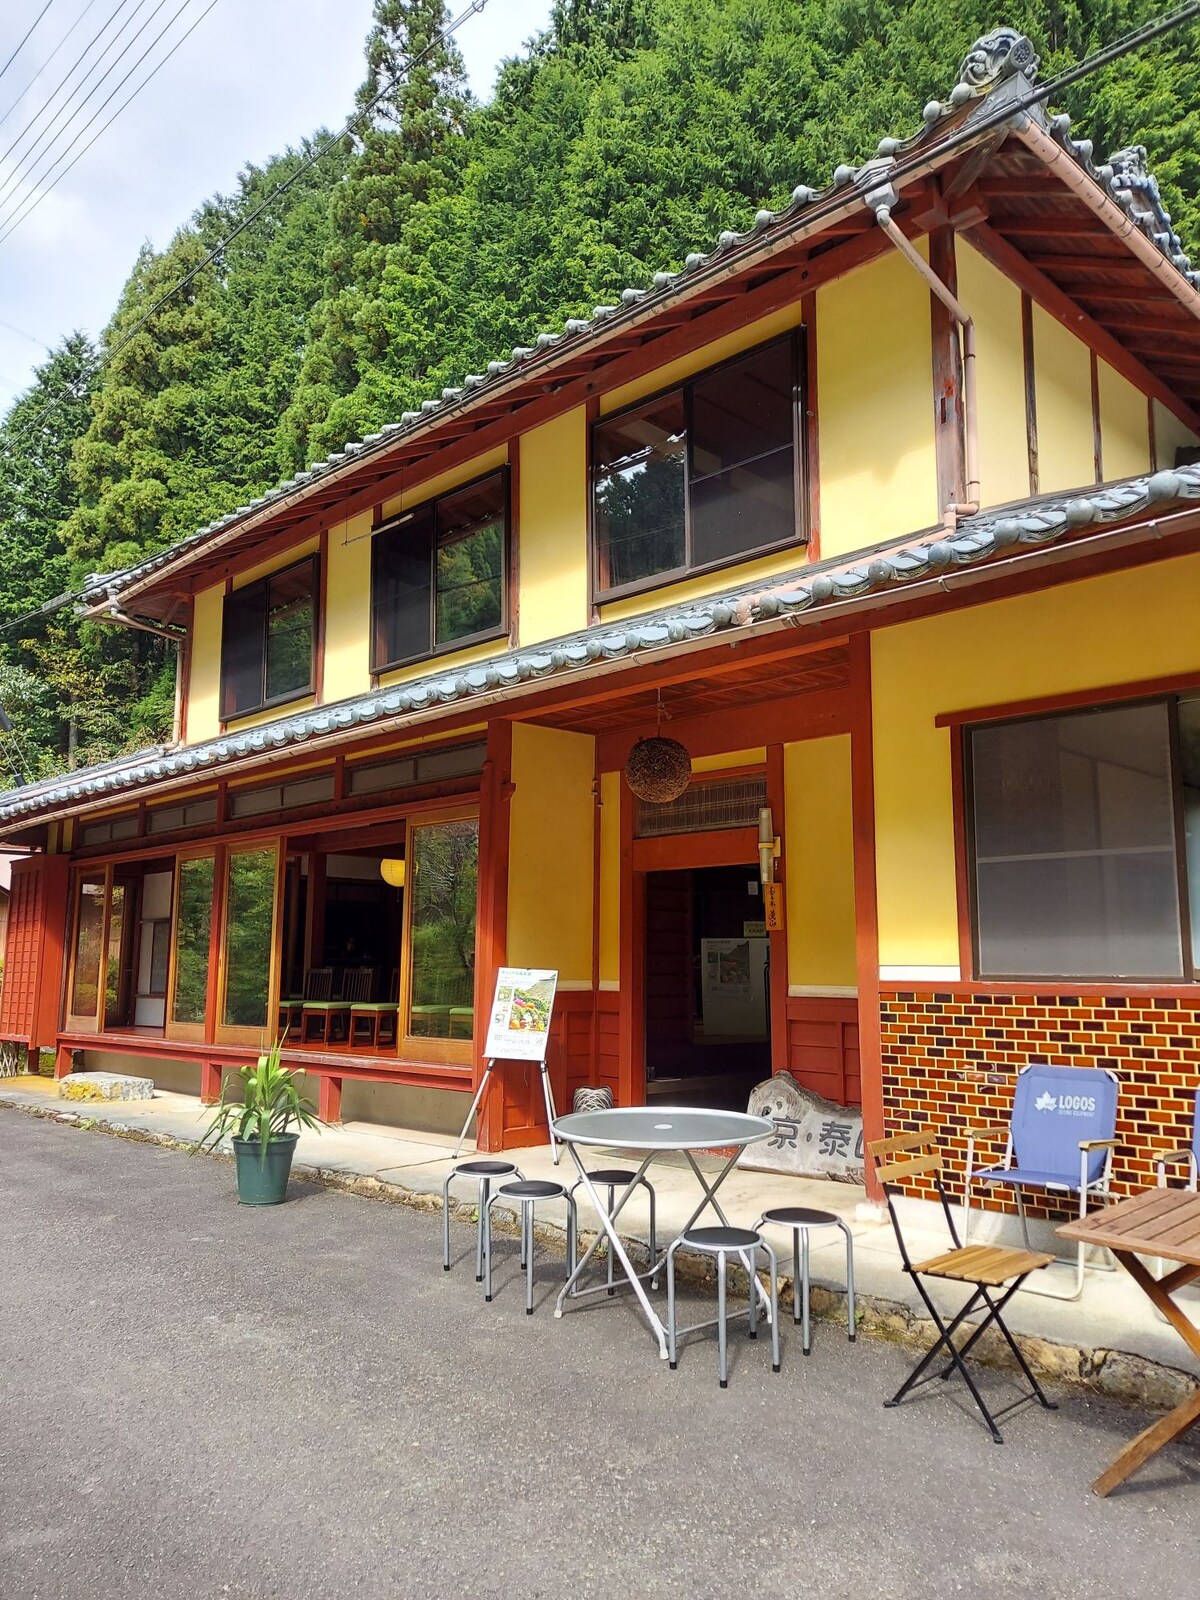 距离歌舞伎之里25分钟车程。这是一个田园诗般的山间住宅，小区里点缀着茅草。季节性